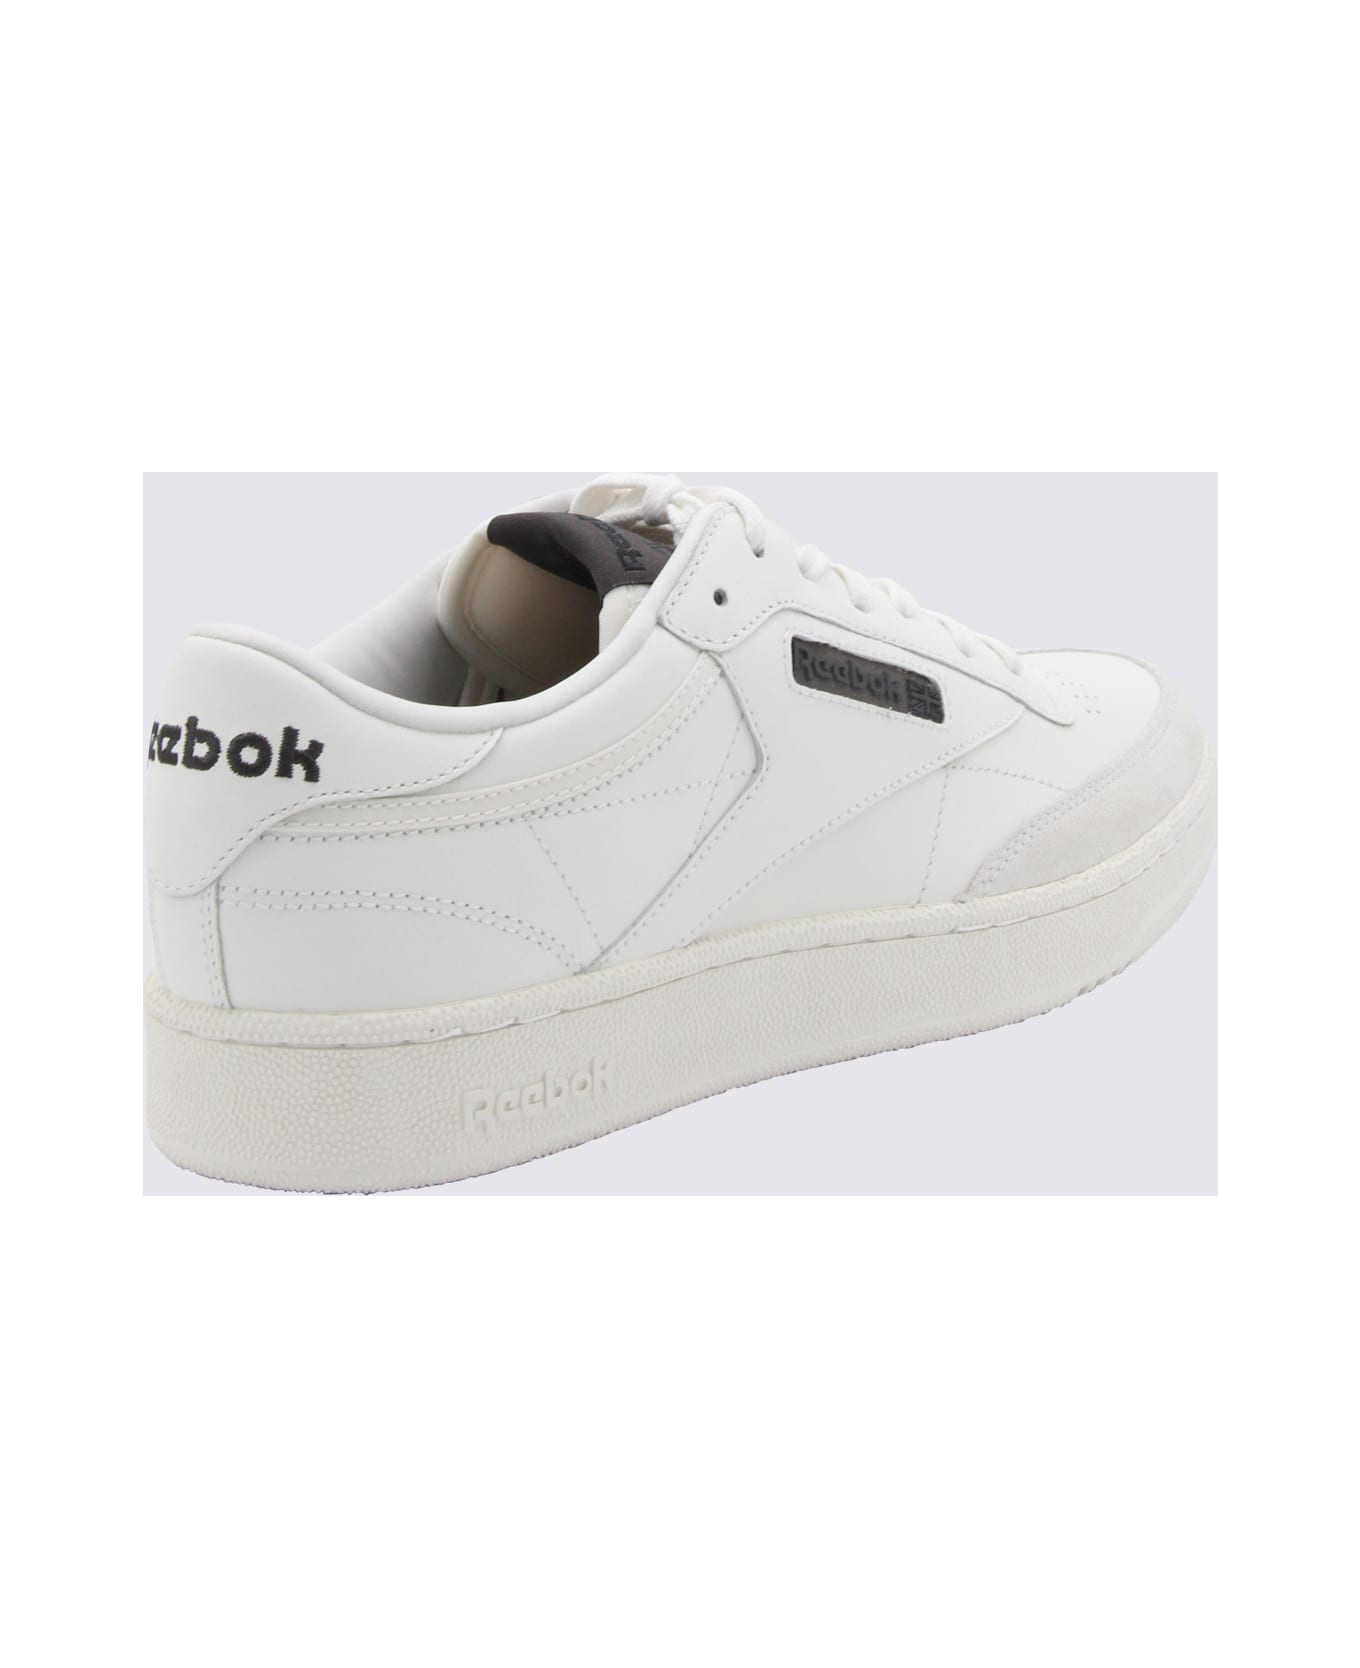 Reebok White Leather Sneakers - White